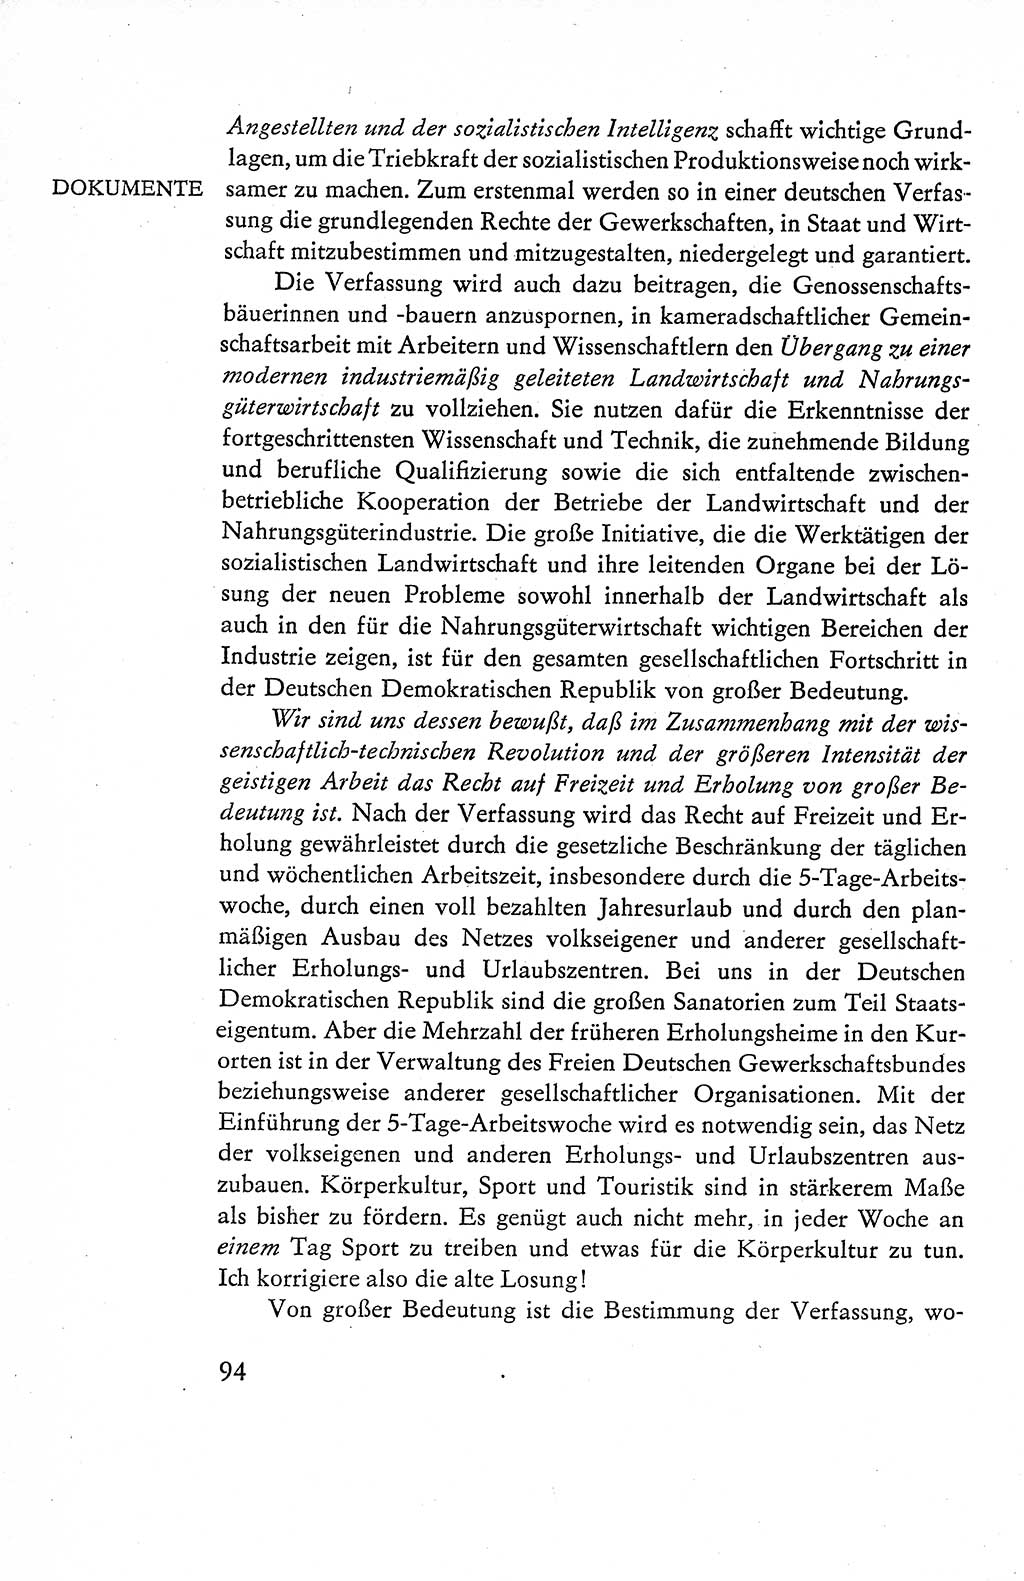 Verfassung der Deutschen Demokratischen Republik (DDR), Dokumente, Kommentar 1969, Band 1, Seite 94 (Verf. DDR Dok. Komm. 1969, Bd. 1, S. 94)